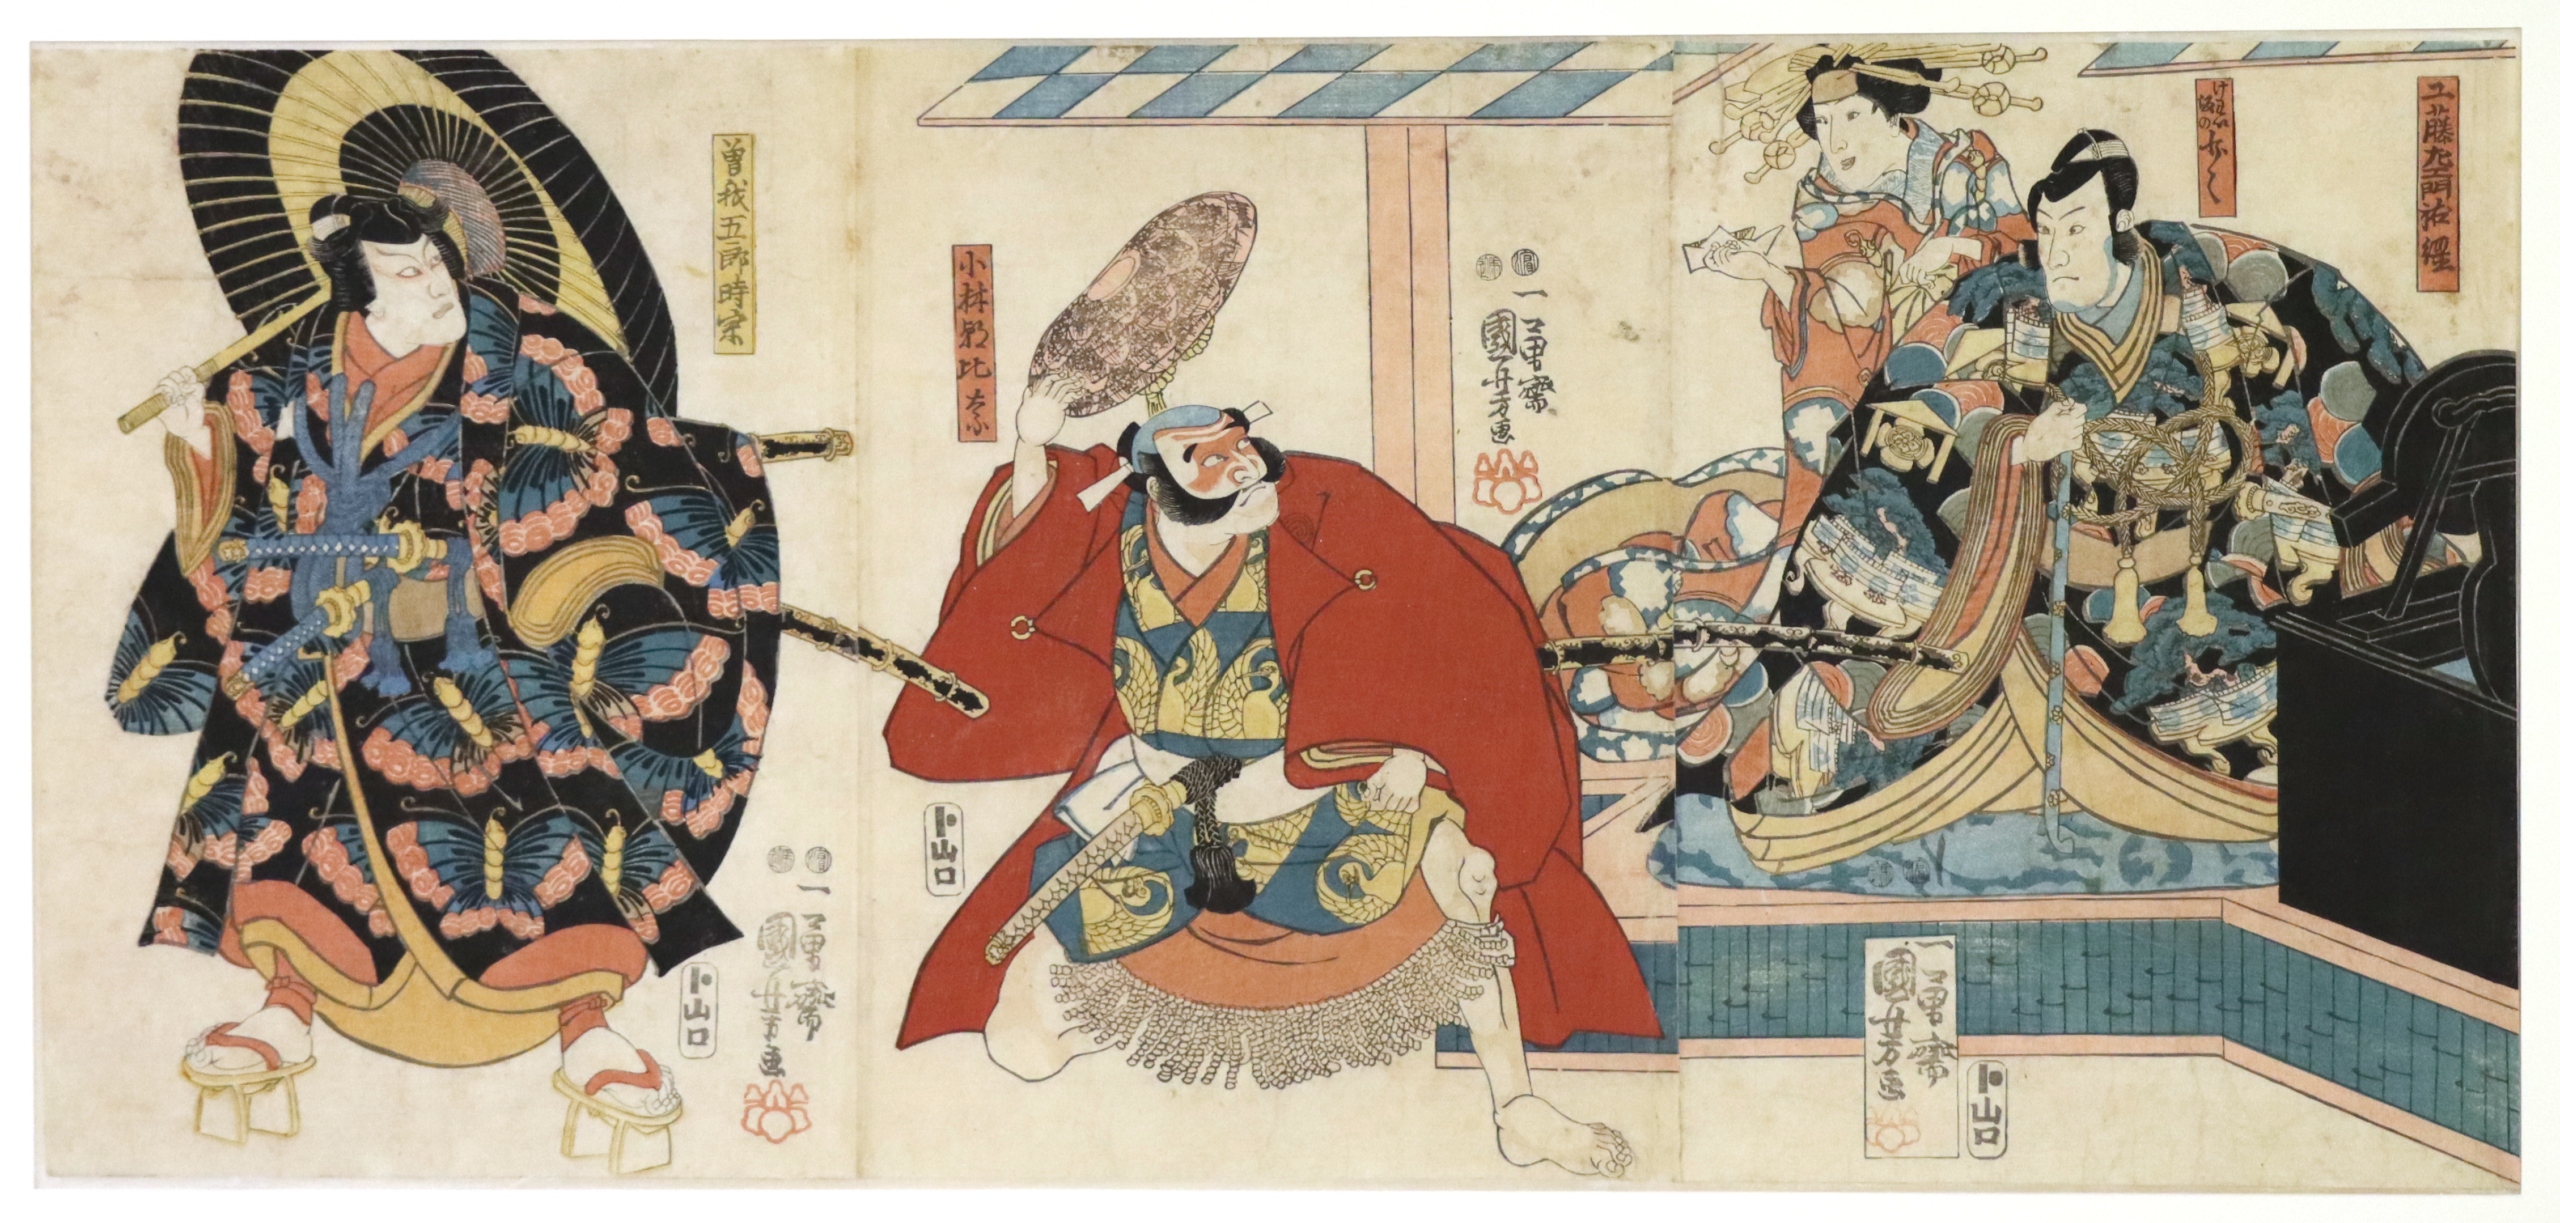 Acteurs, trois gravures sur bois au format oban tate-e, circa 1850